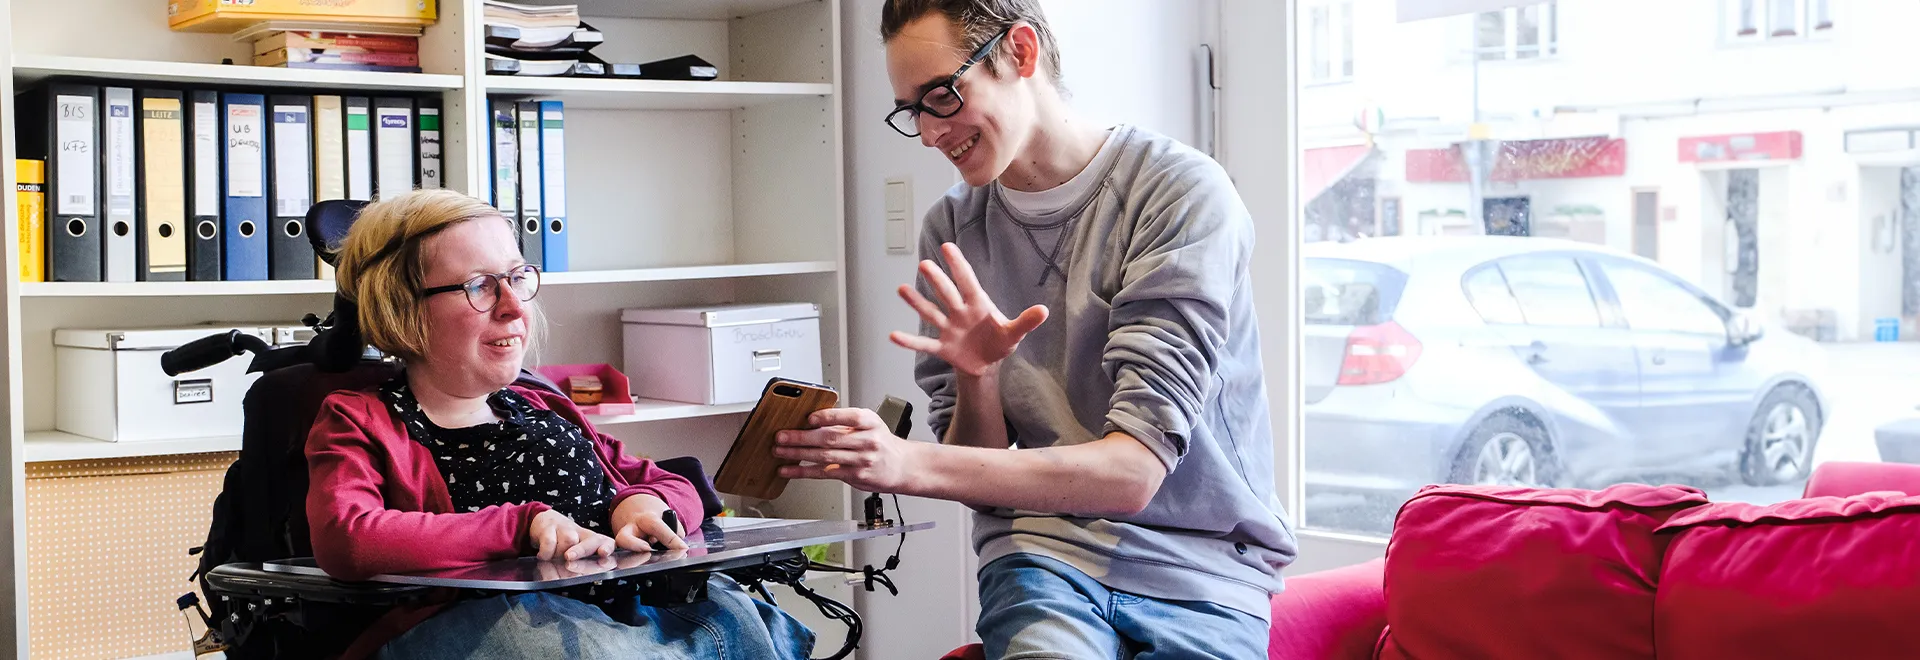 Ein junger Mann zeigt einer Frau im Rollstuhl etwas auf seinem Handy.